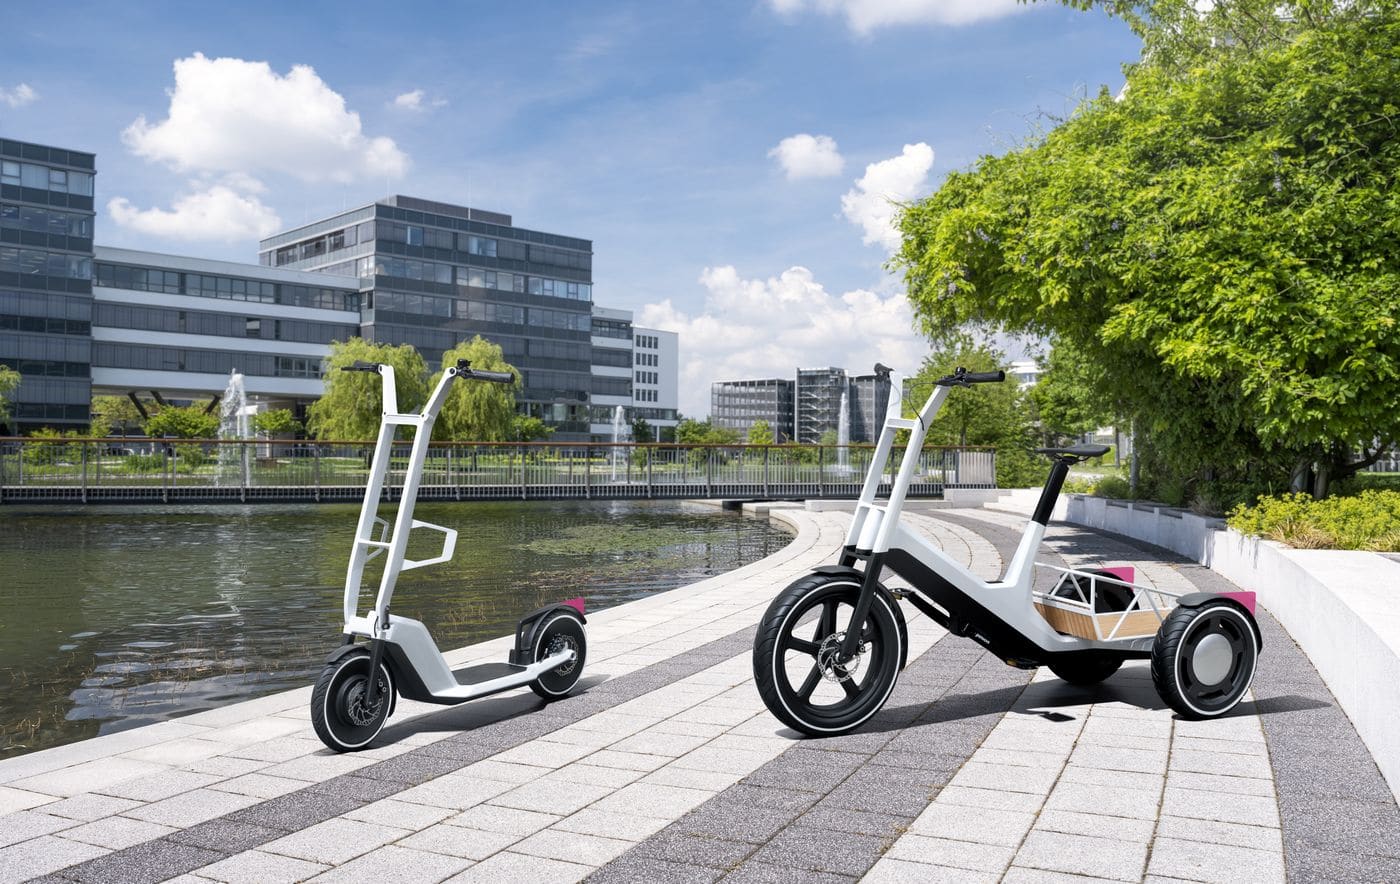 Vélo cargo et trottinette : BMW révèle deux concepts électriques inédits